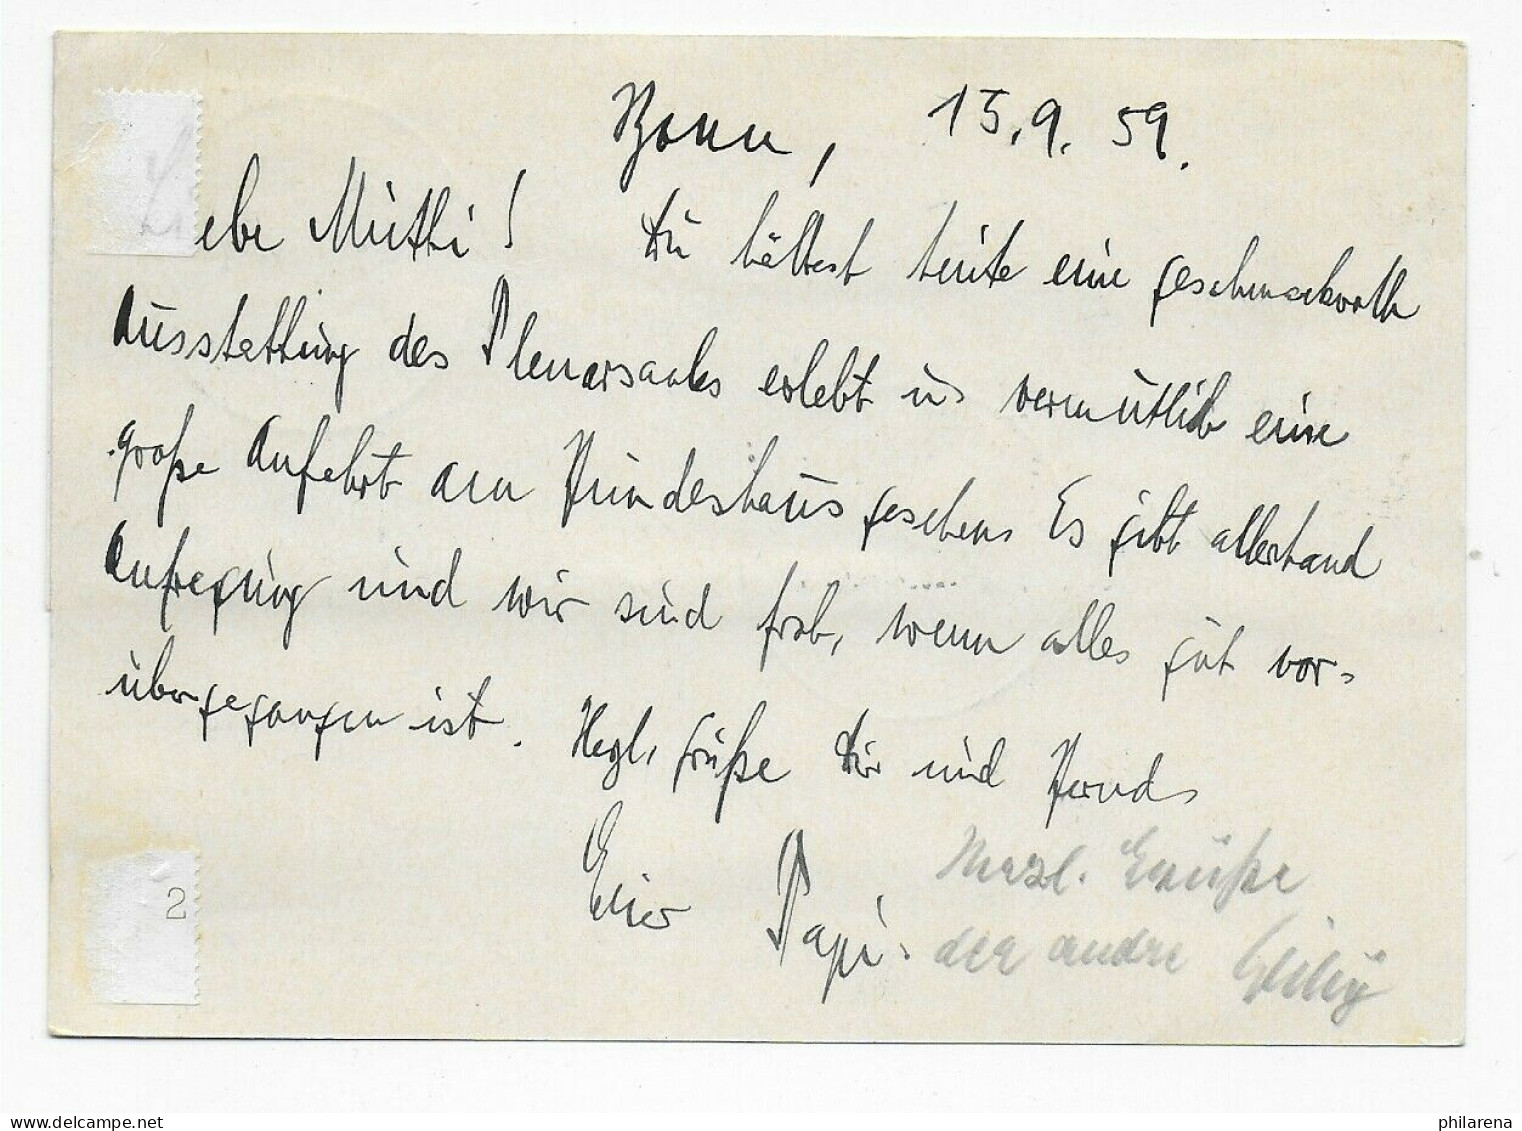 Postkarte Sonderstempel Tag Der Vereidigung Des Bundespräsidenten 15.9.1959, EF - Lettres & Documents